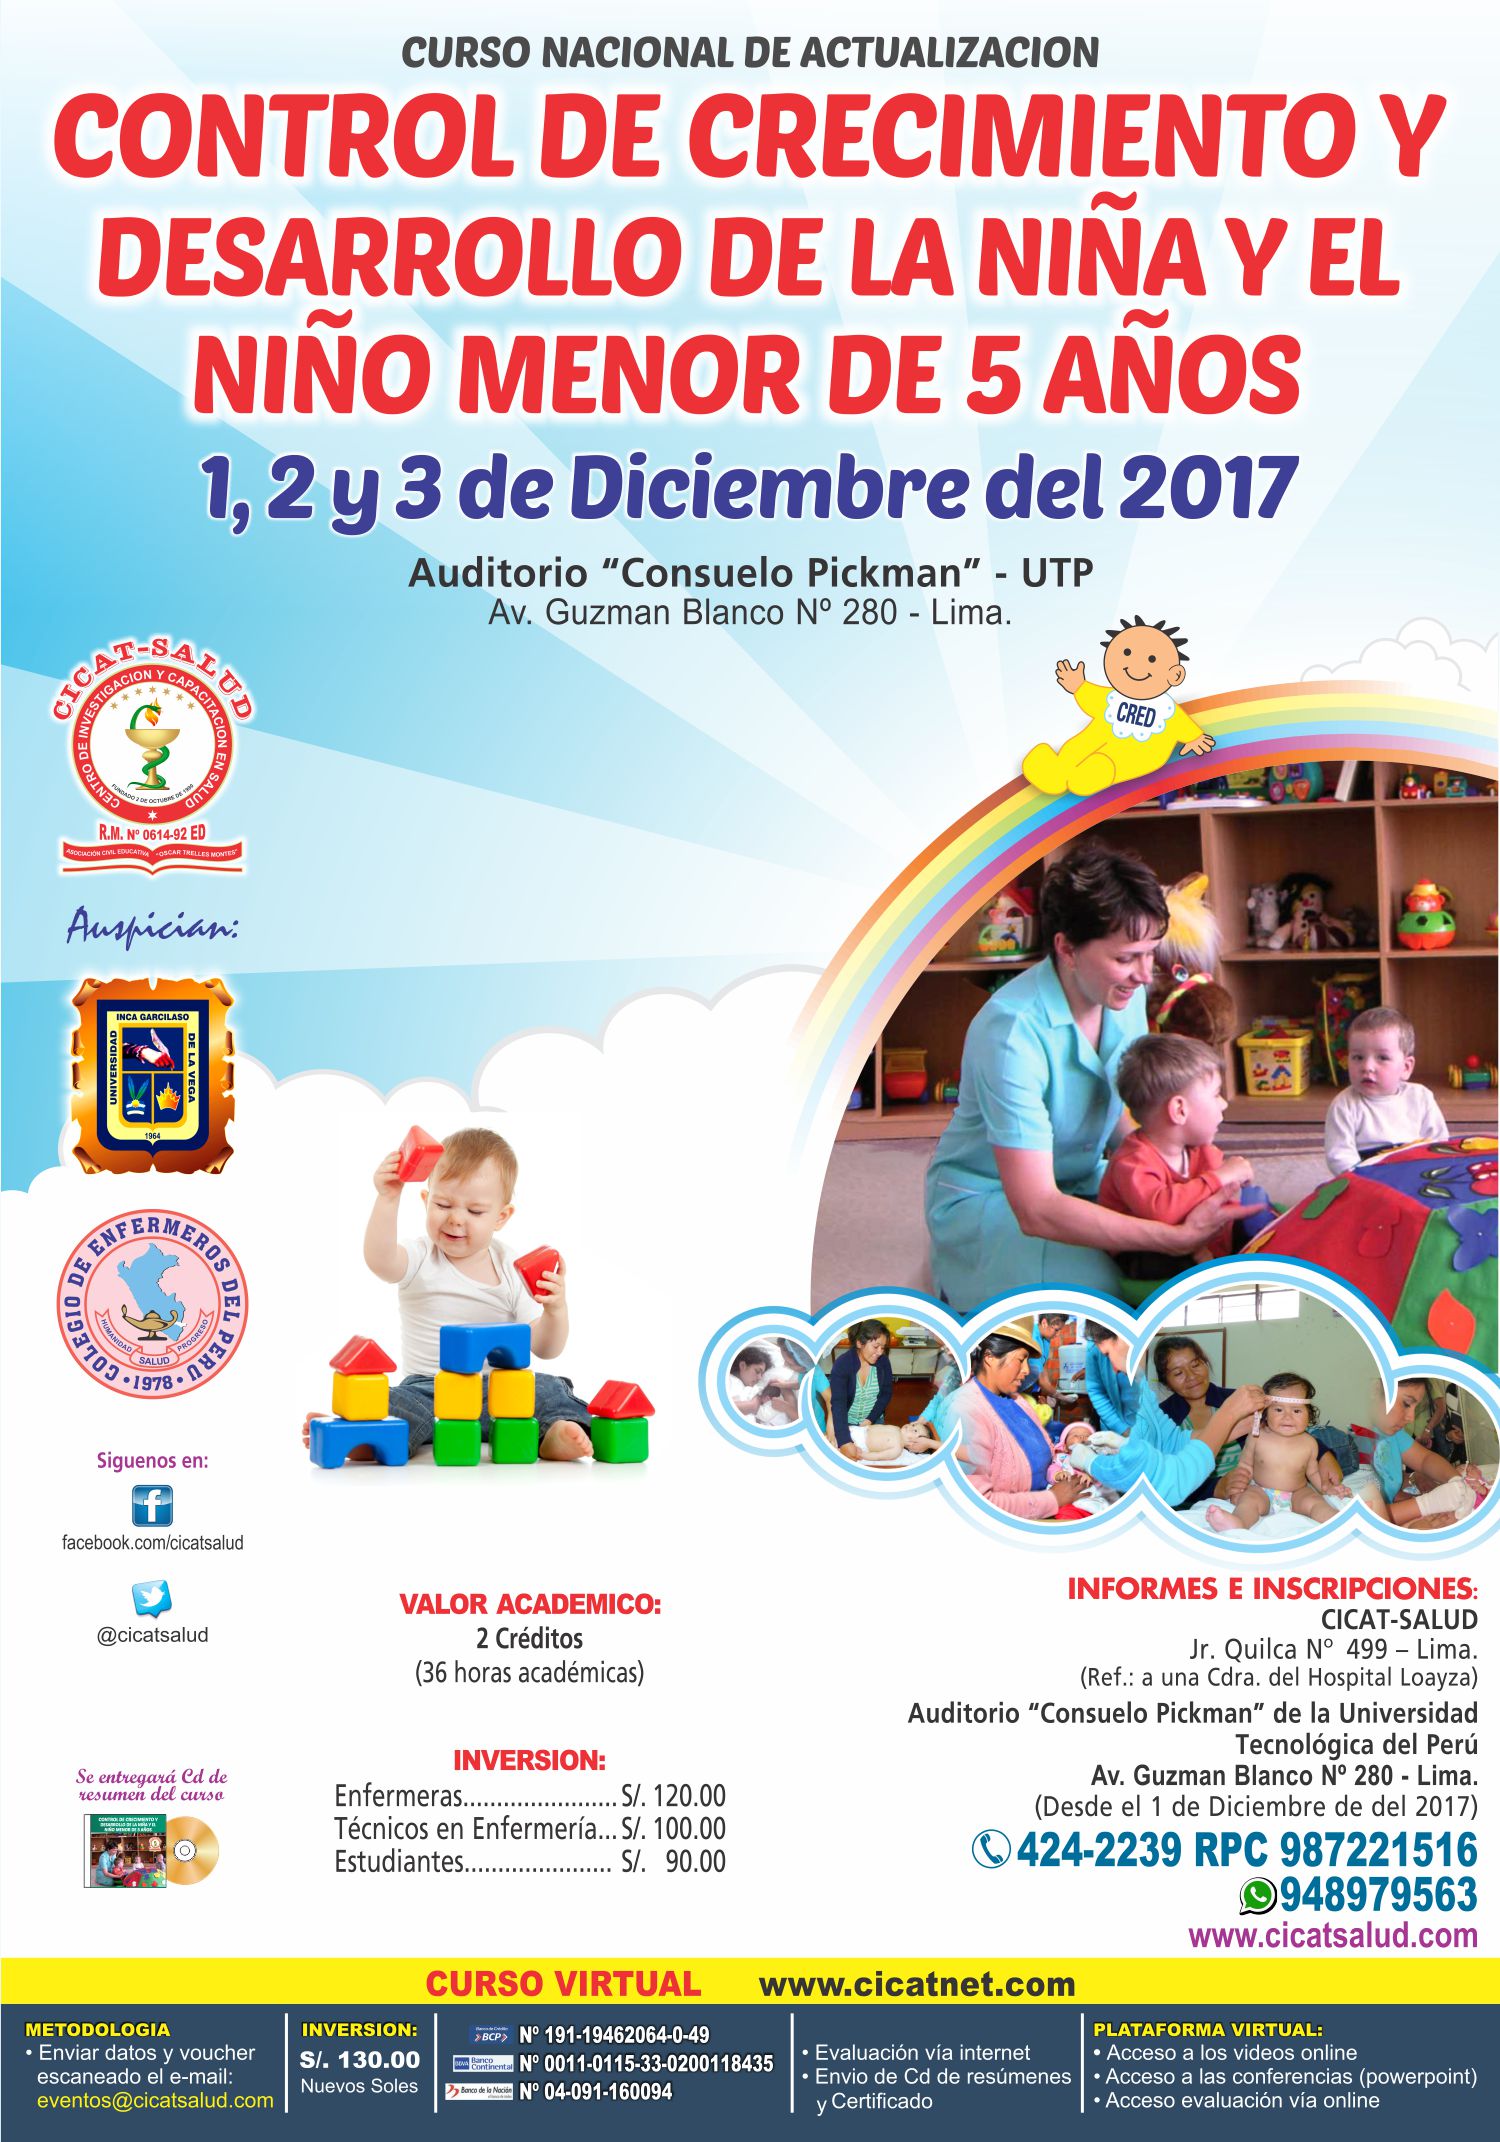 El Crecimiento Infantil Pediatria Salud 2578